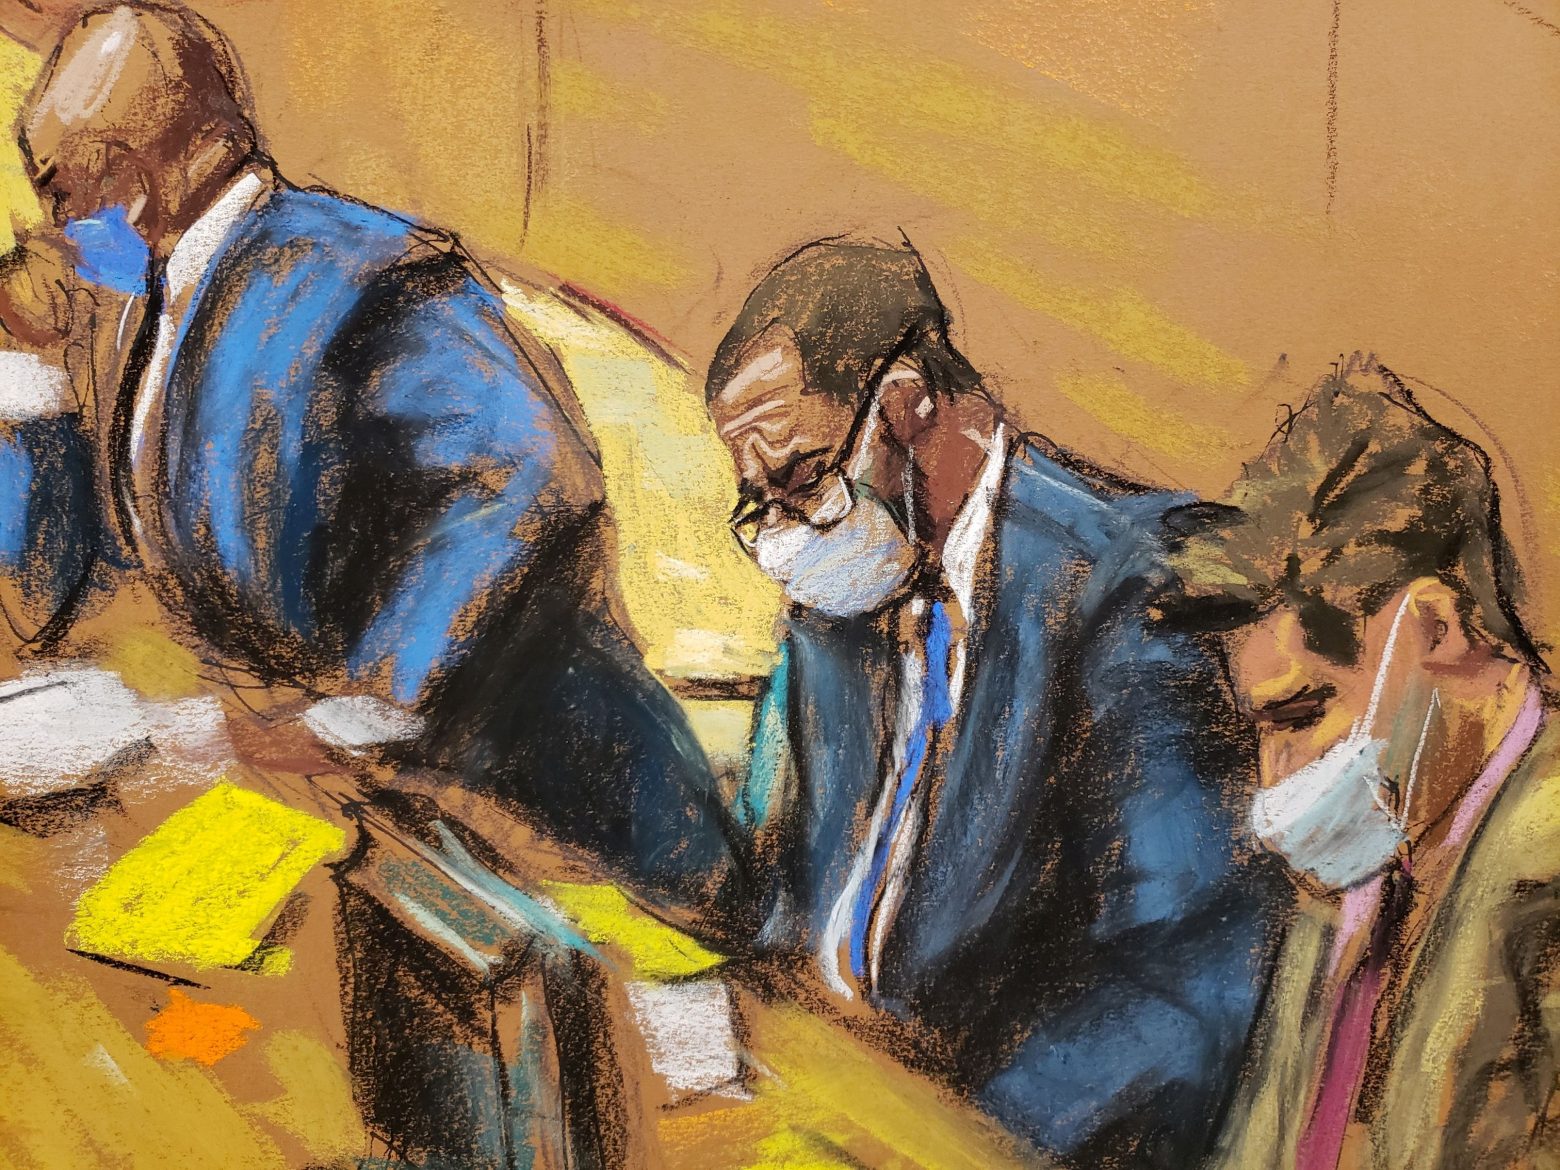 Ένοχος για σεξουαλικά εγκλήματα ο R. Kelly - Δικαιώνονται τα θύματά του